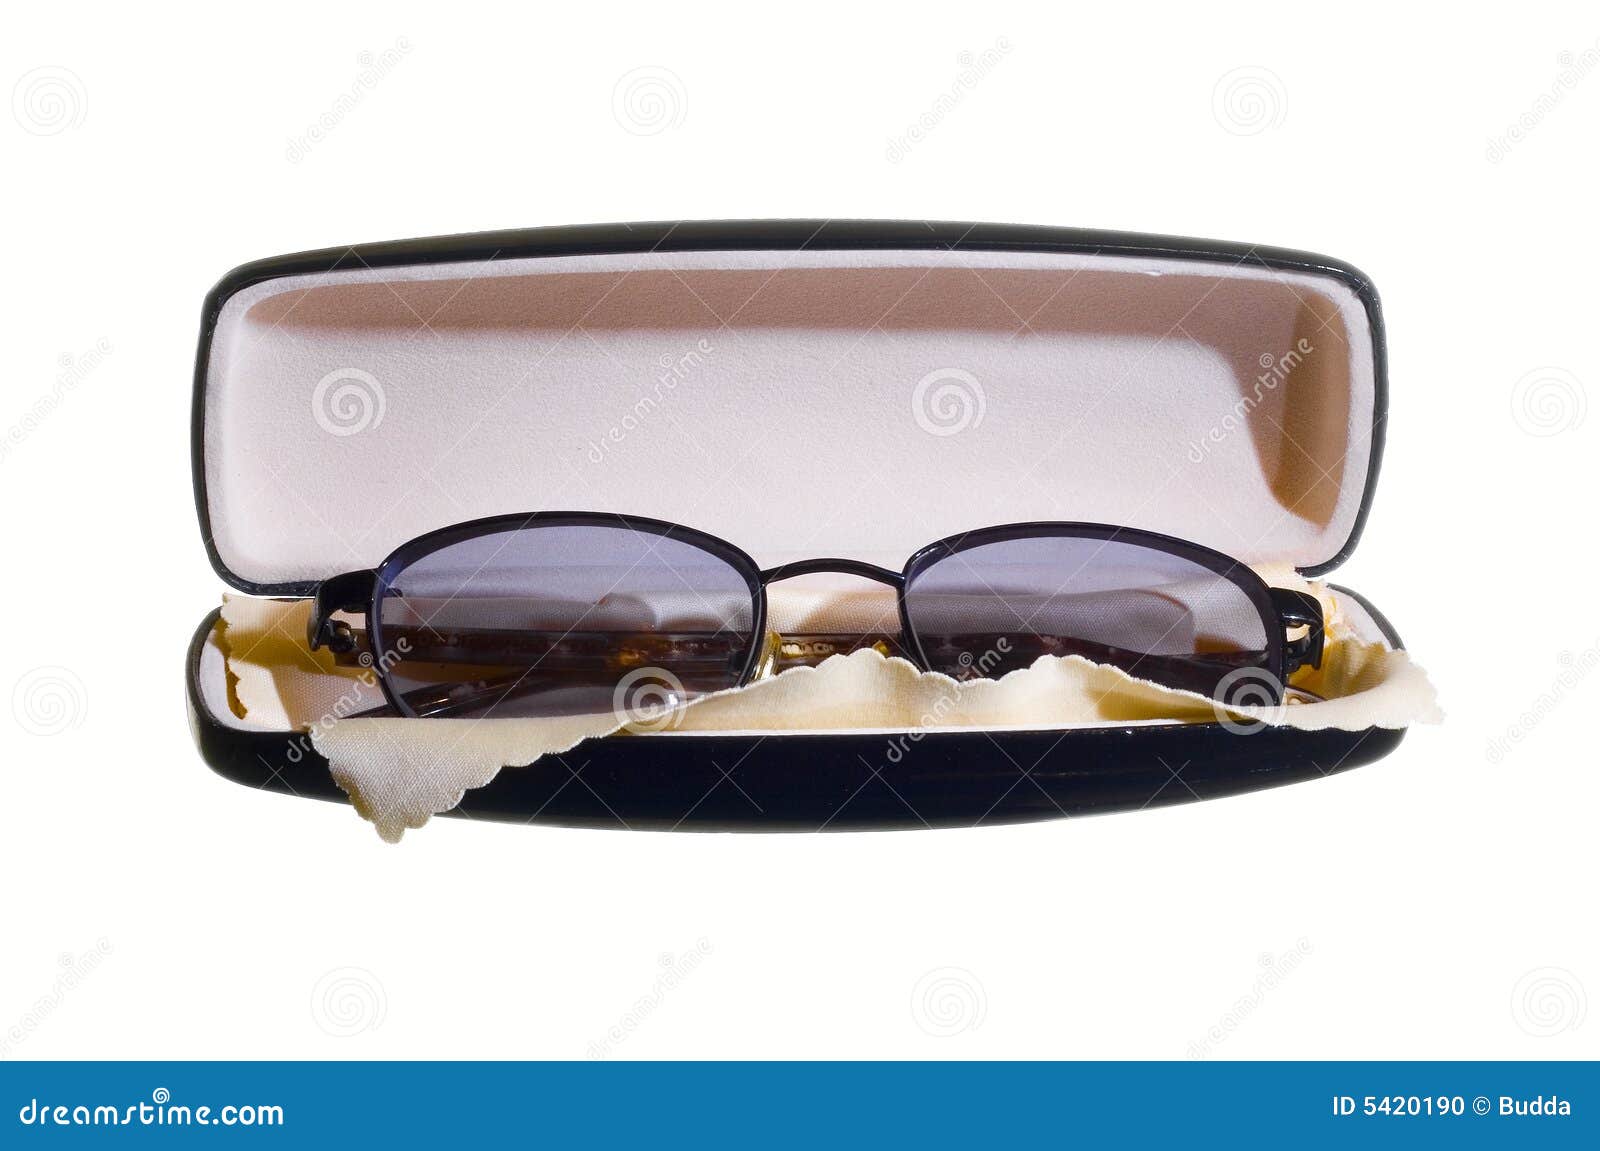 eyeglasses in case